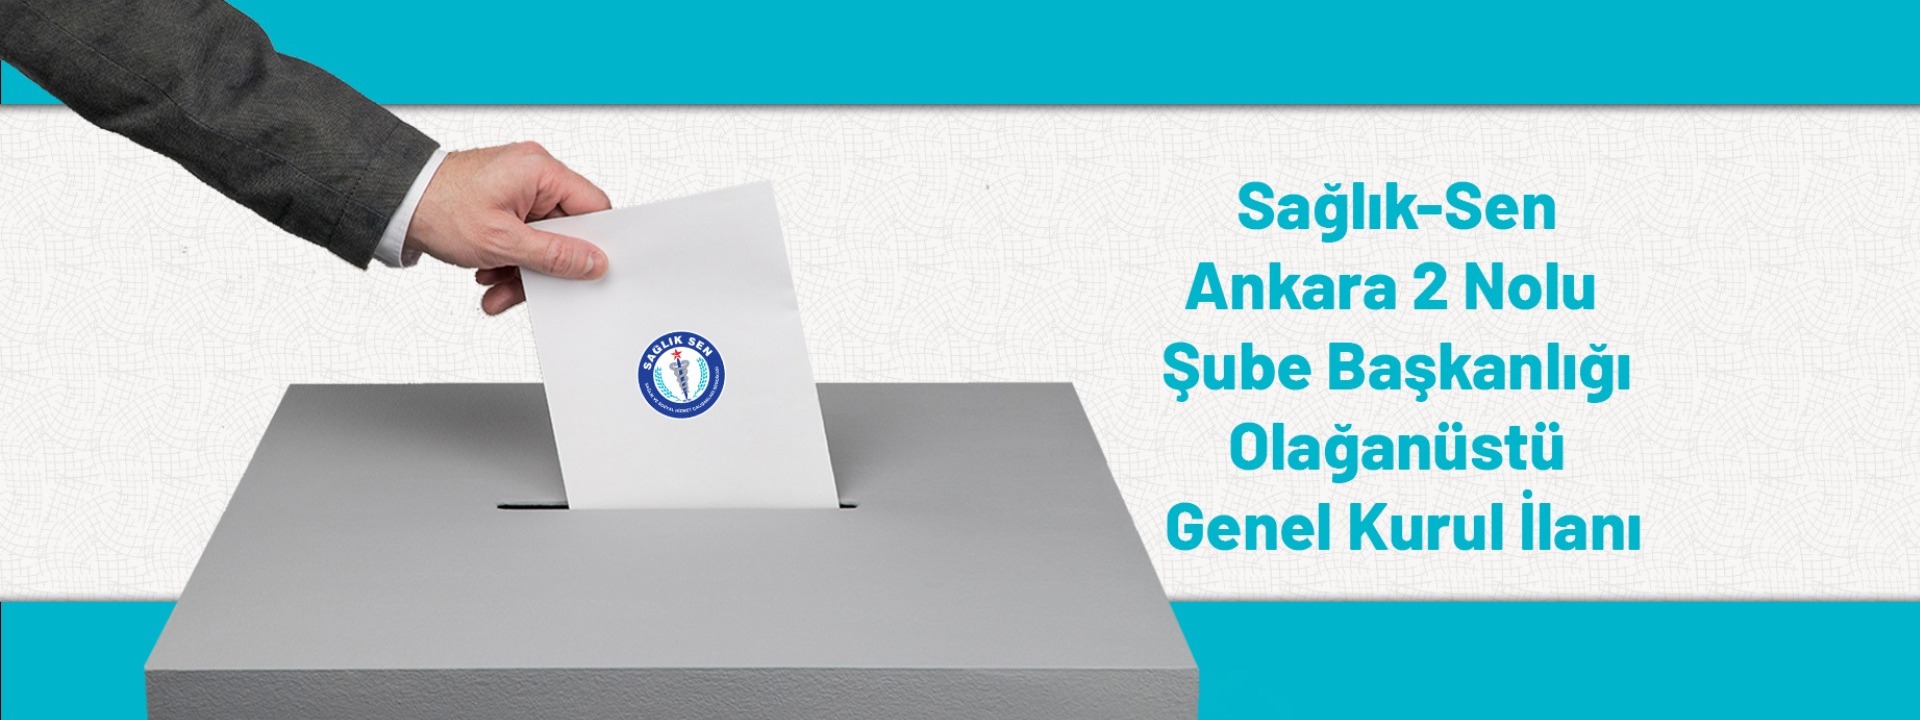 Sağlık Sen Ankara 2 Nolu Şube Başkanlığı Olağanüstü Genel Kurul İlanı